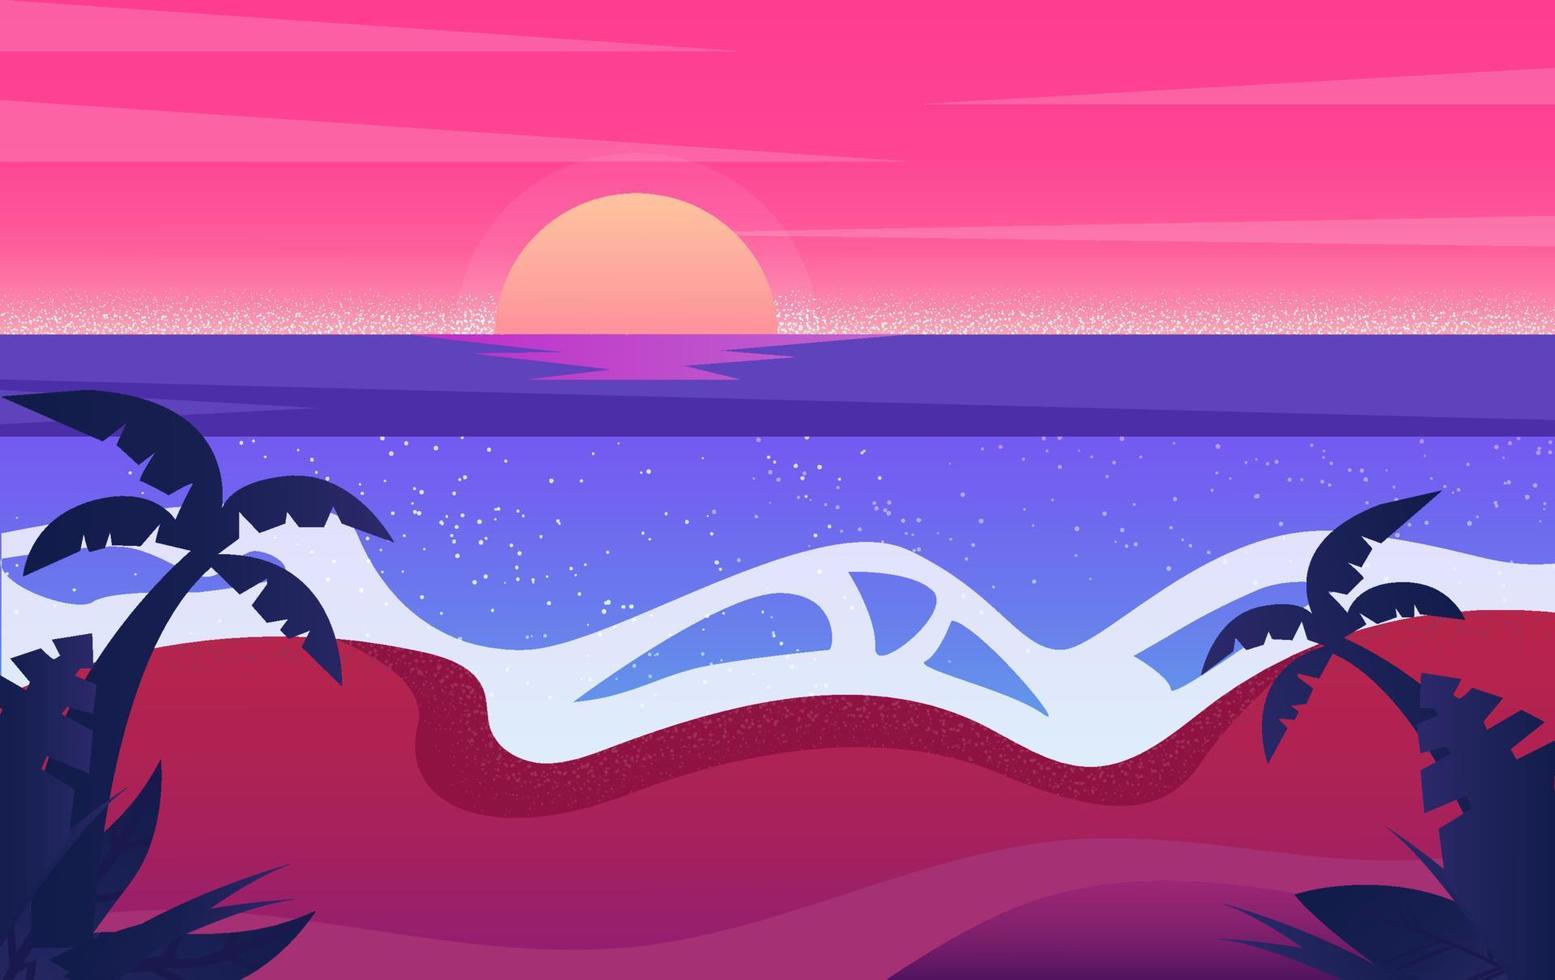 zee en strand landschap concept. silhouet Mens genieten schoonheid van zomer strand zonsondergang. vector illustratie